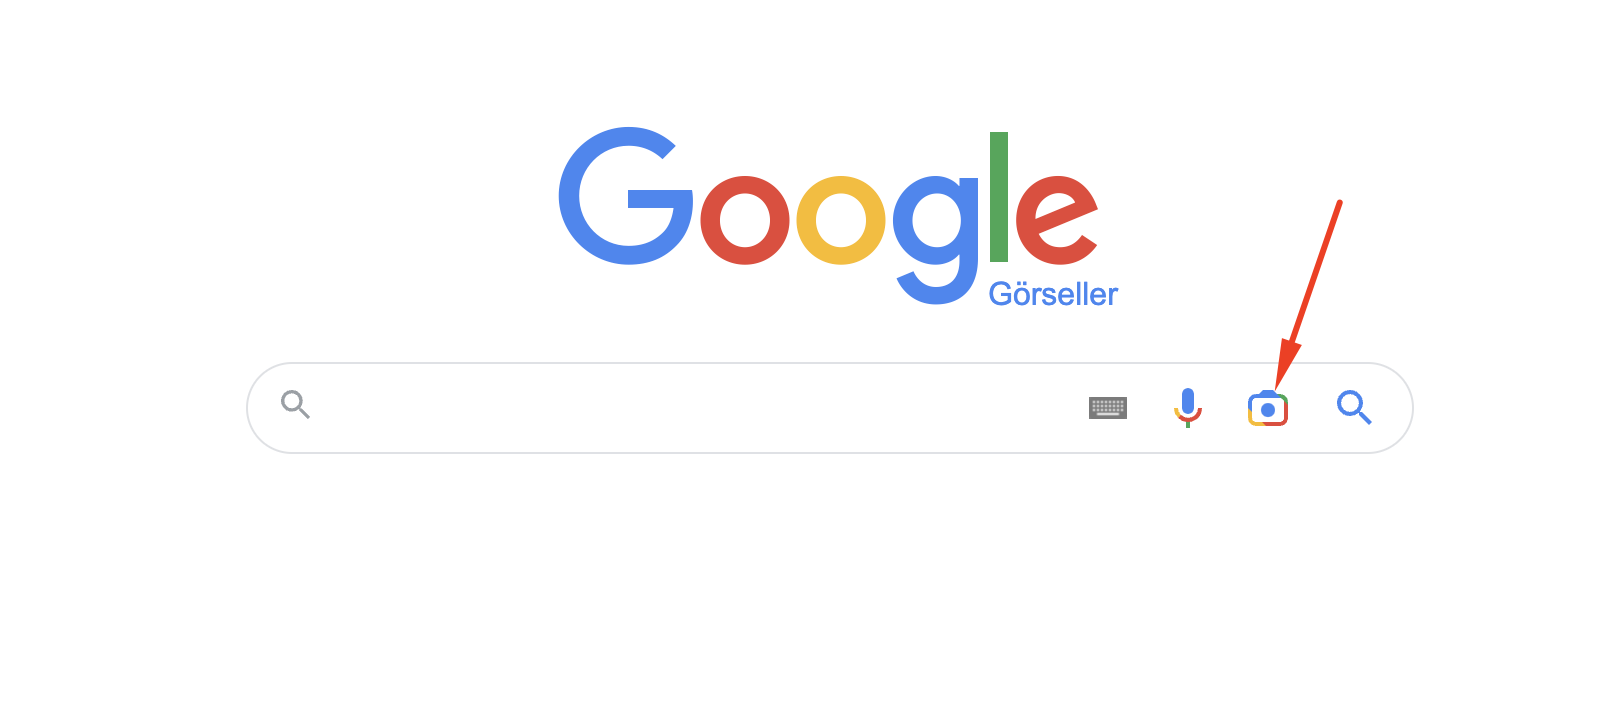 Google görsel arama nasıl yapılır